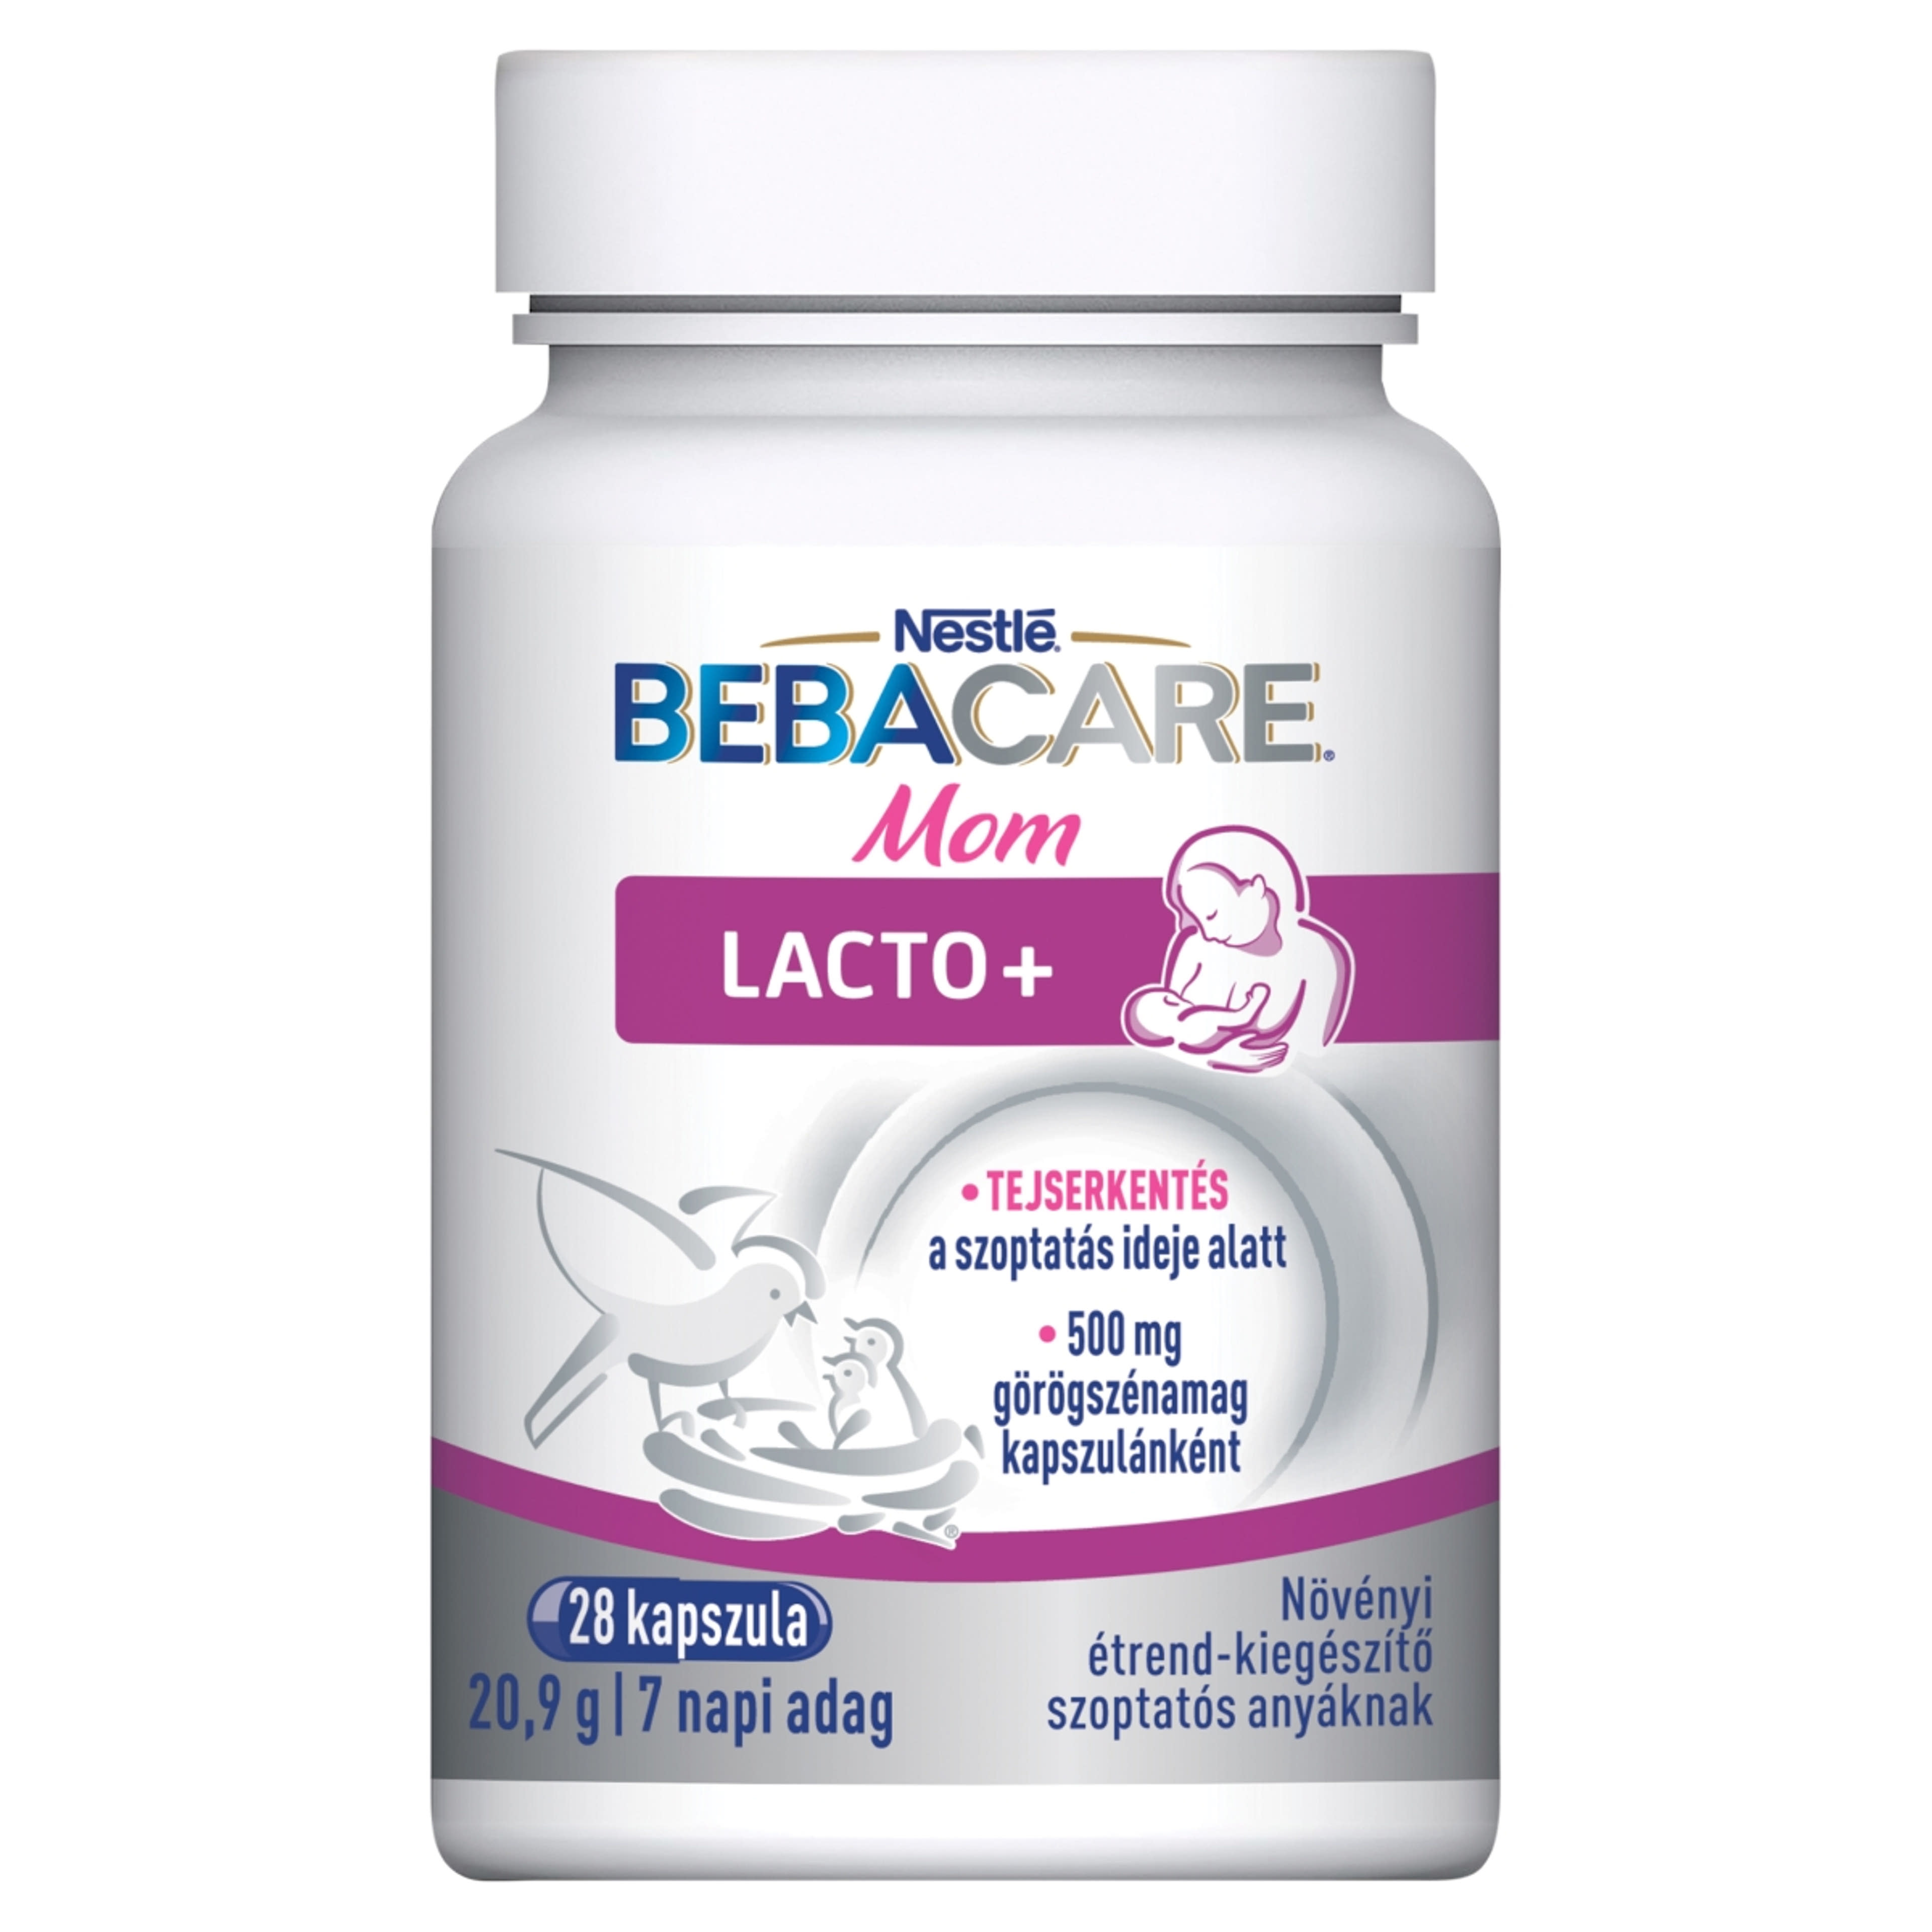 Nestlé Bebacare Lacto+ növényi étrend-kiegészítő szoptatós anyáknak - 28 db